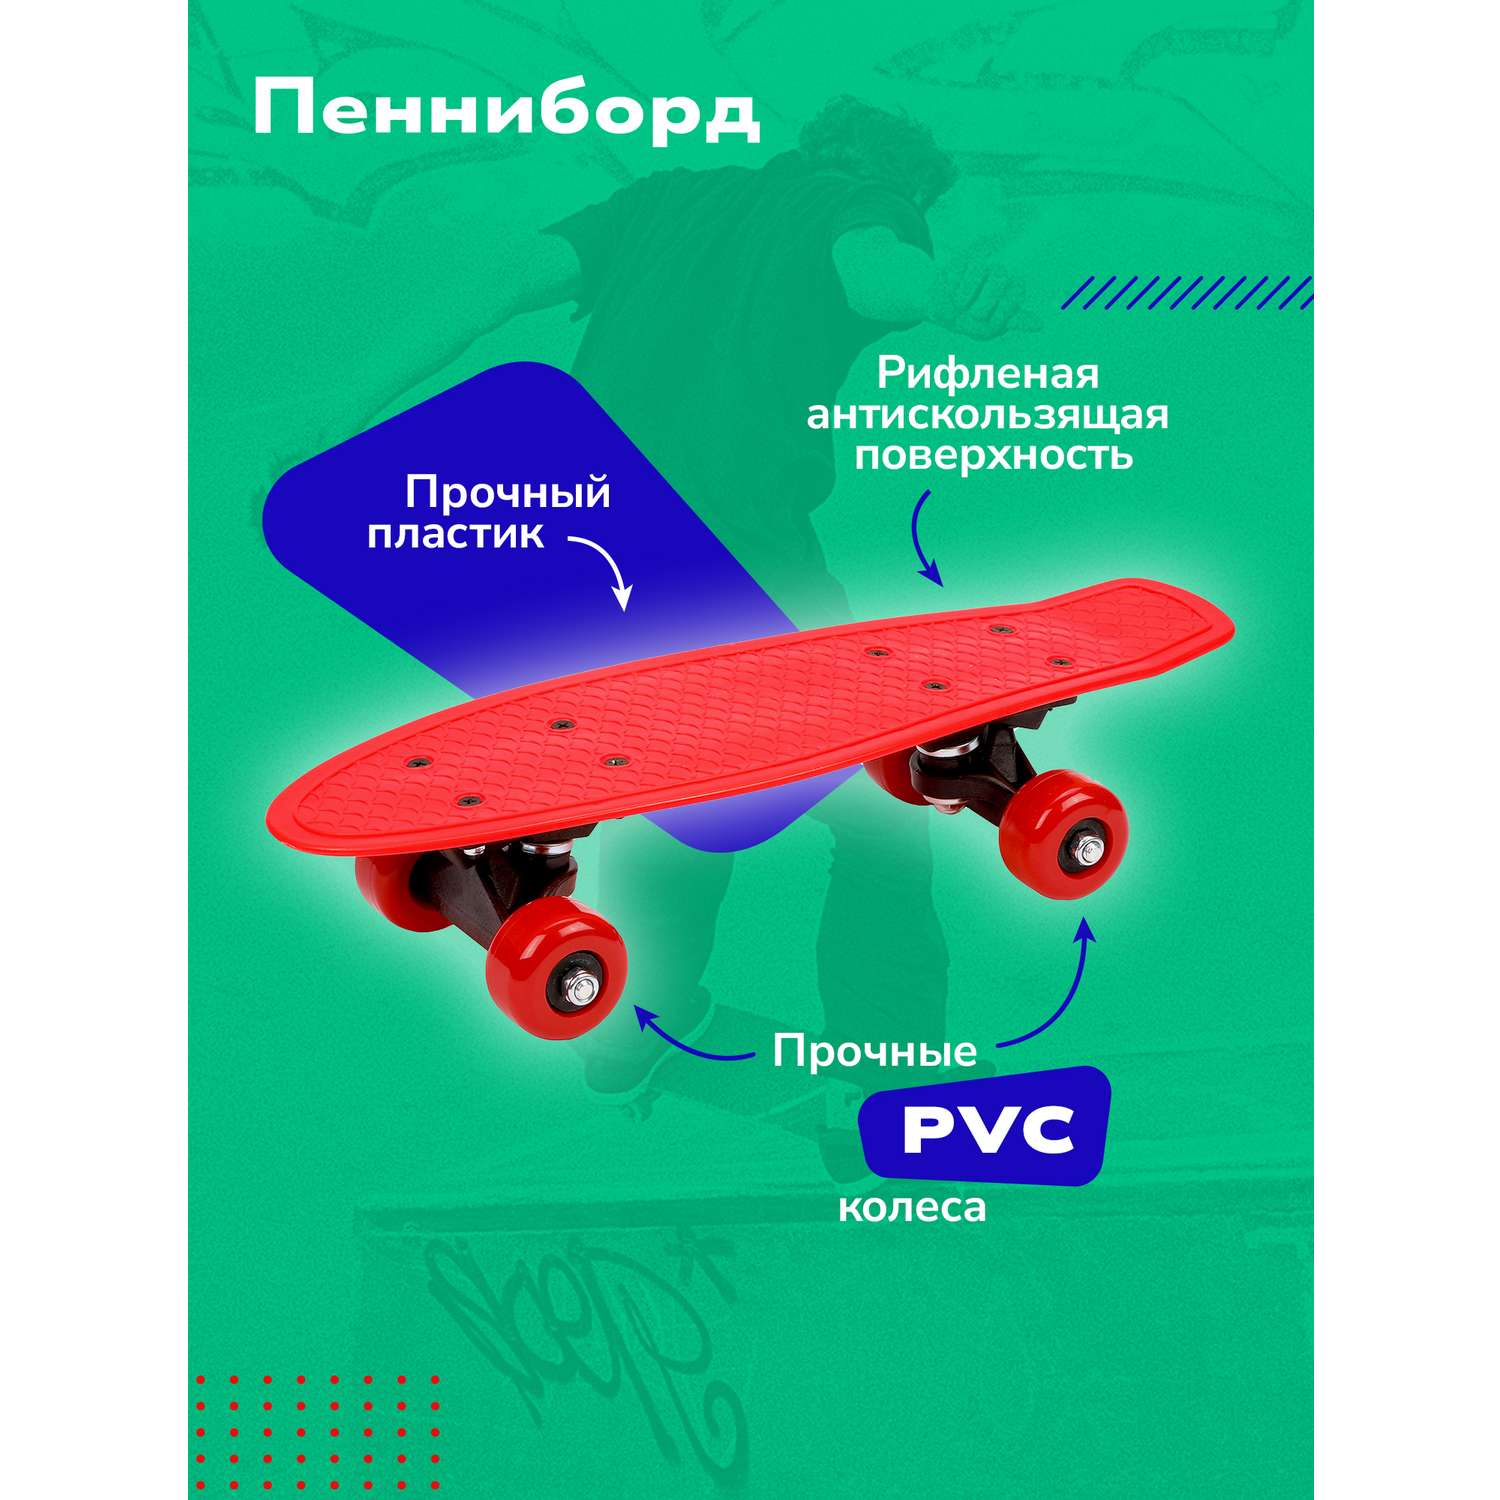 Скейтборд-пенниборд Наша Игрушка пластик 43 см. колеса PVC крепления пластик. Красный - фото 1